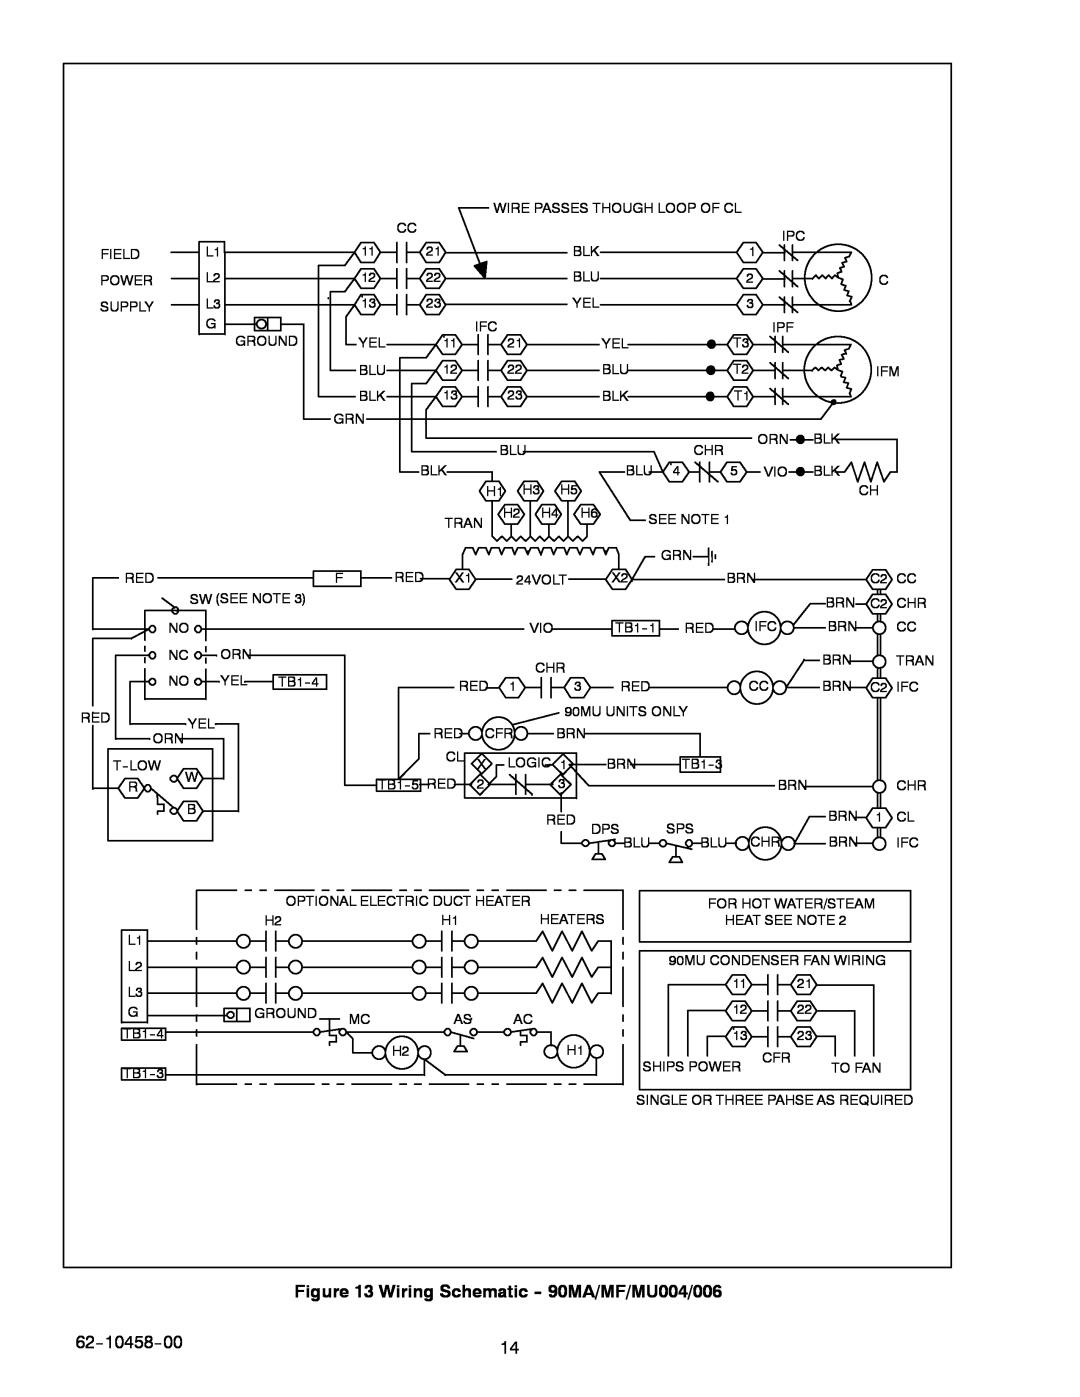 Carrier manual Wiring Schematic --90MA/MF/MU004/006, 62--10458--00 